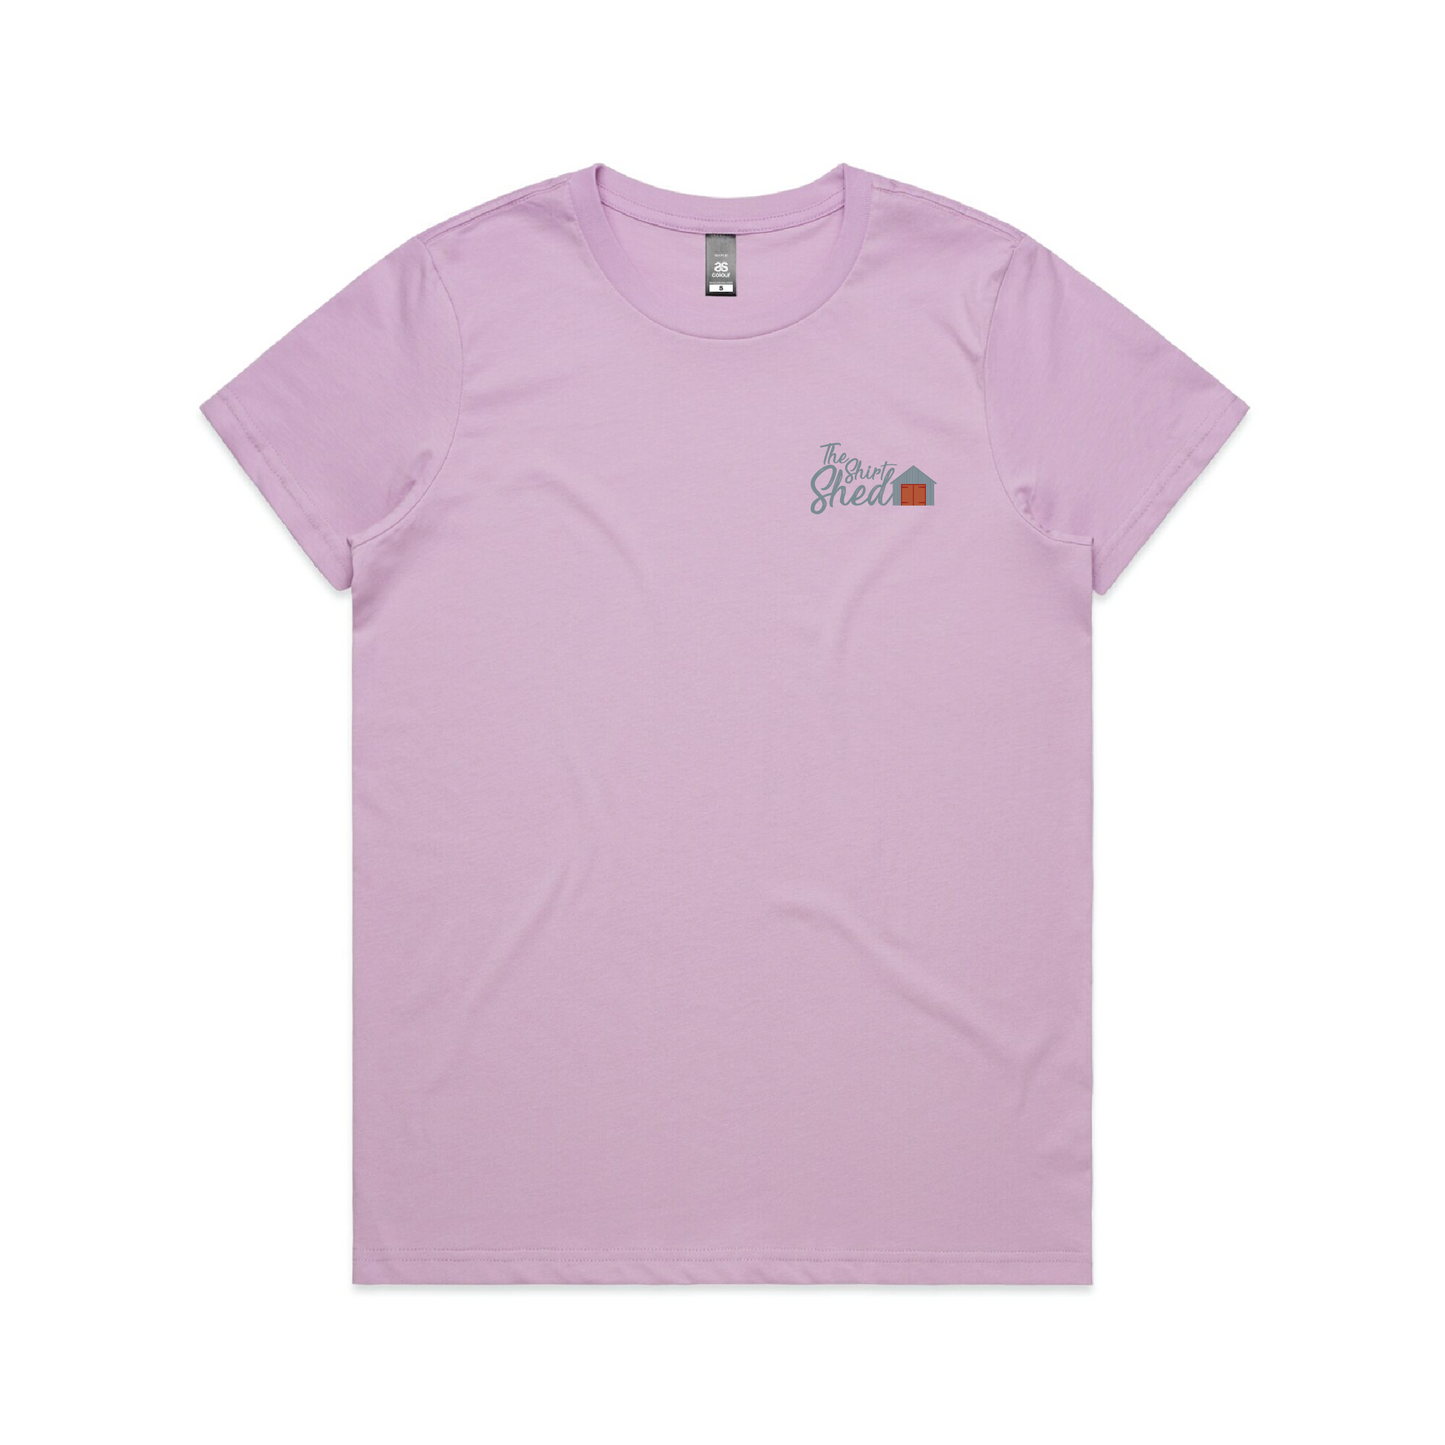 The Shirt Shed Women's T-Shirt